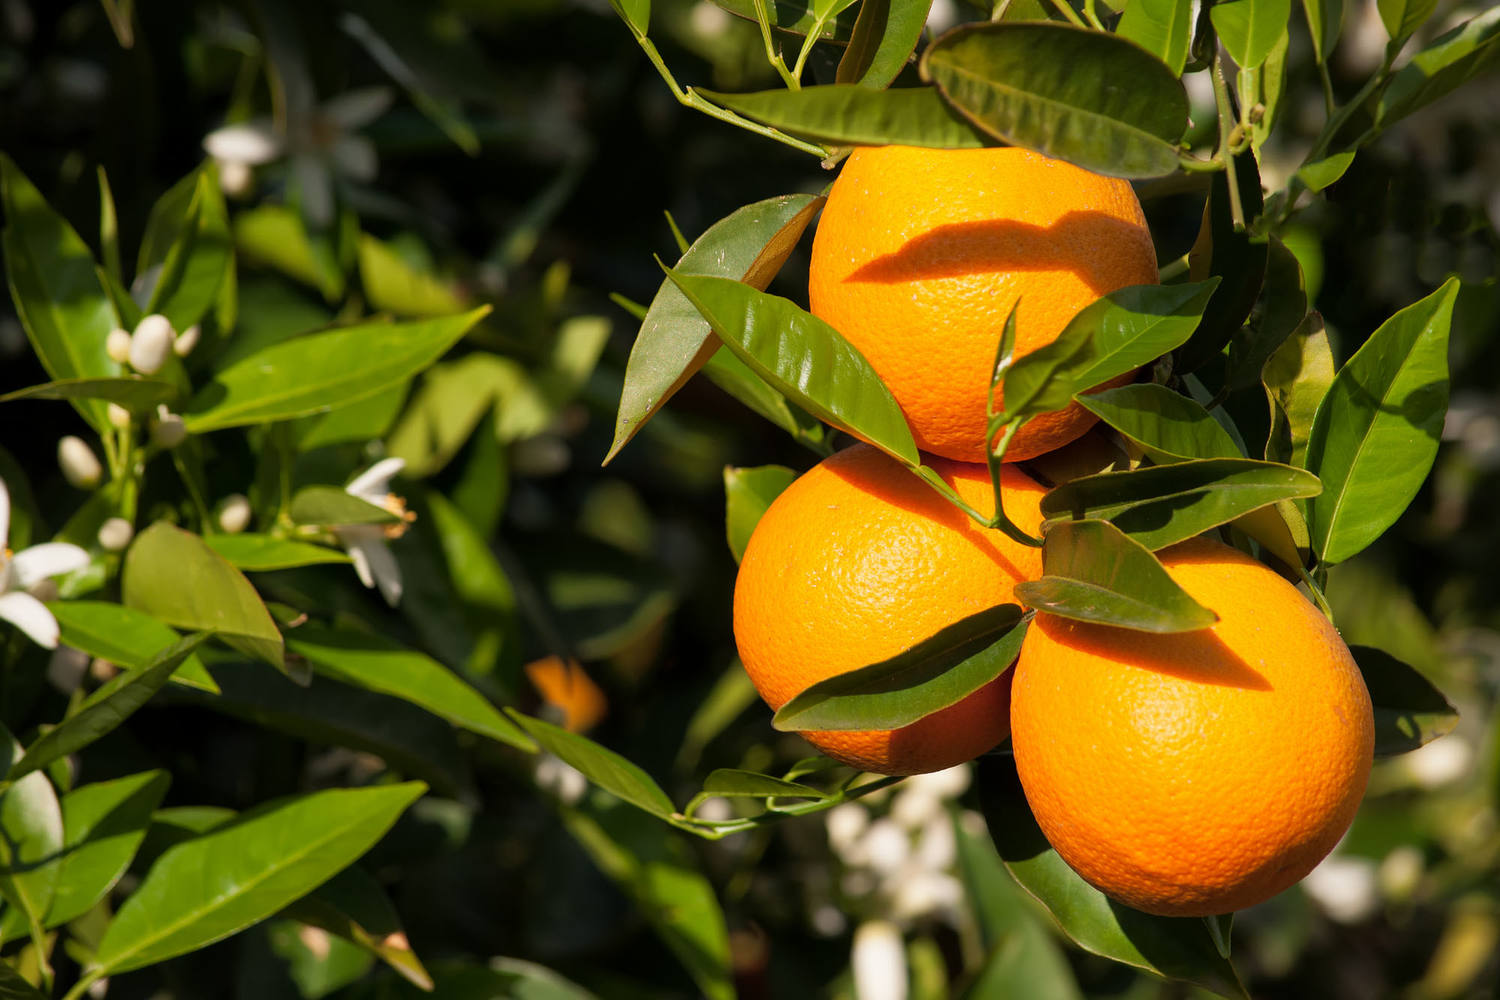 Perssinaasappel klein 64-73mm kist 15 kilogram 3